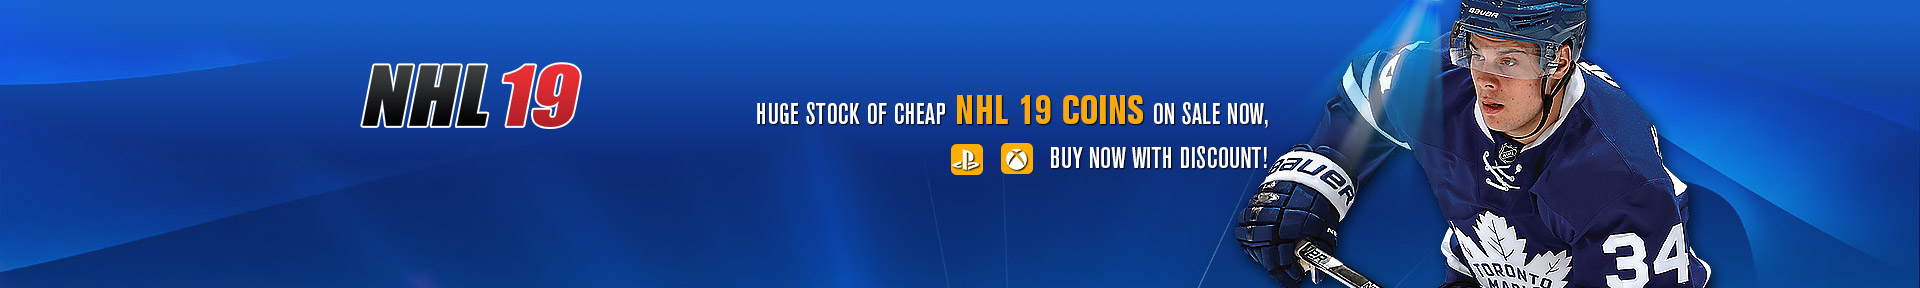 NHL 19 Coins